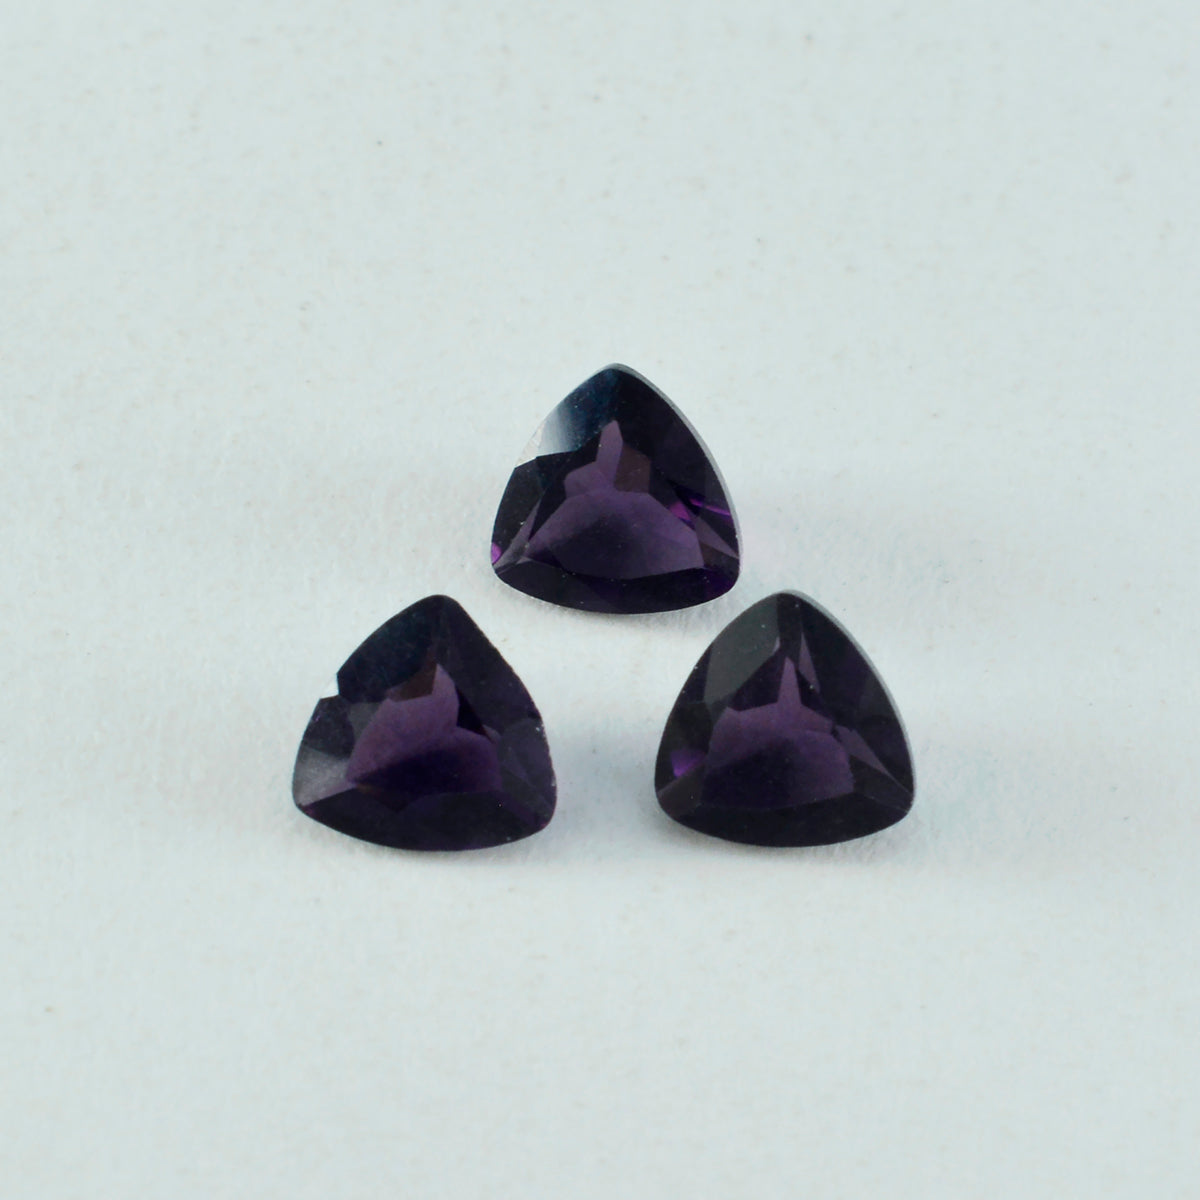 riyogems 1 шт., фиолетовый аметист, граненый 12x12 мм, форма триллиона, красивый качественный драгоценный камень